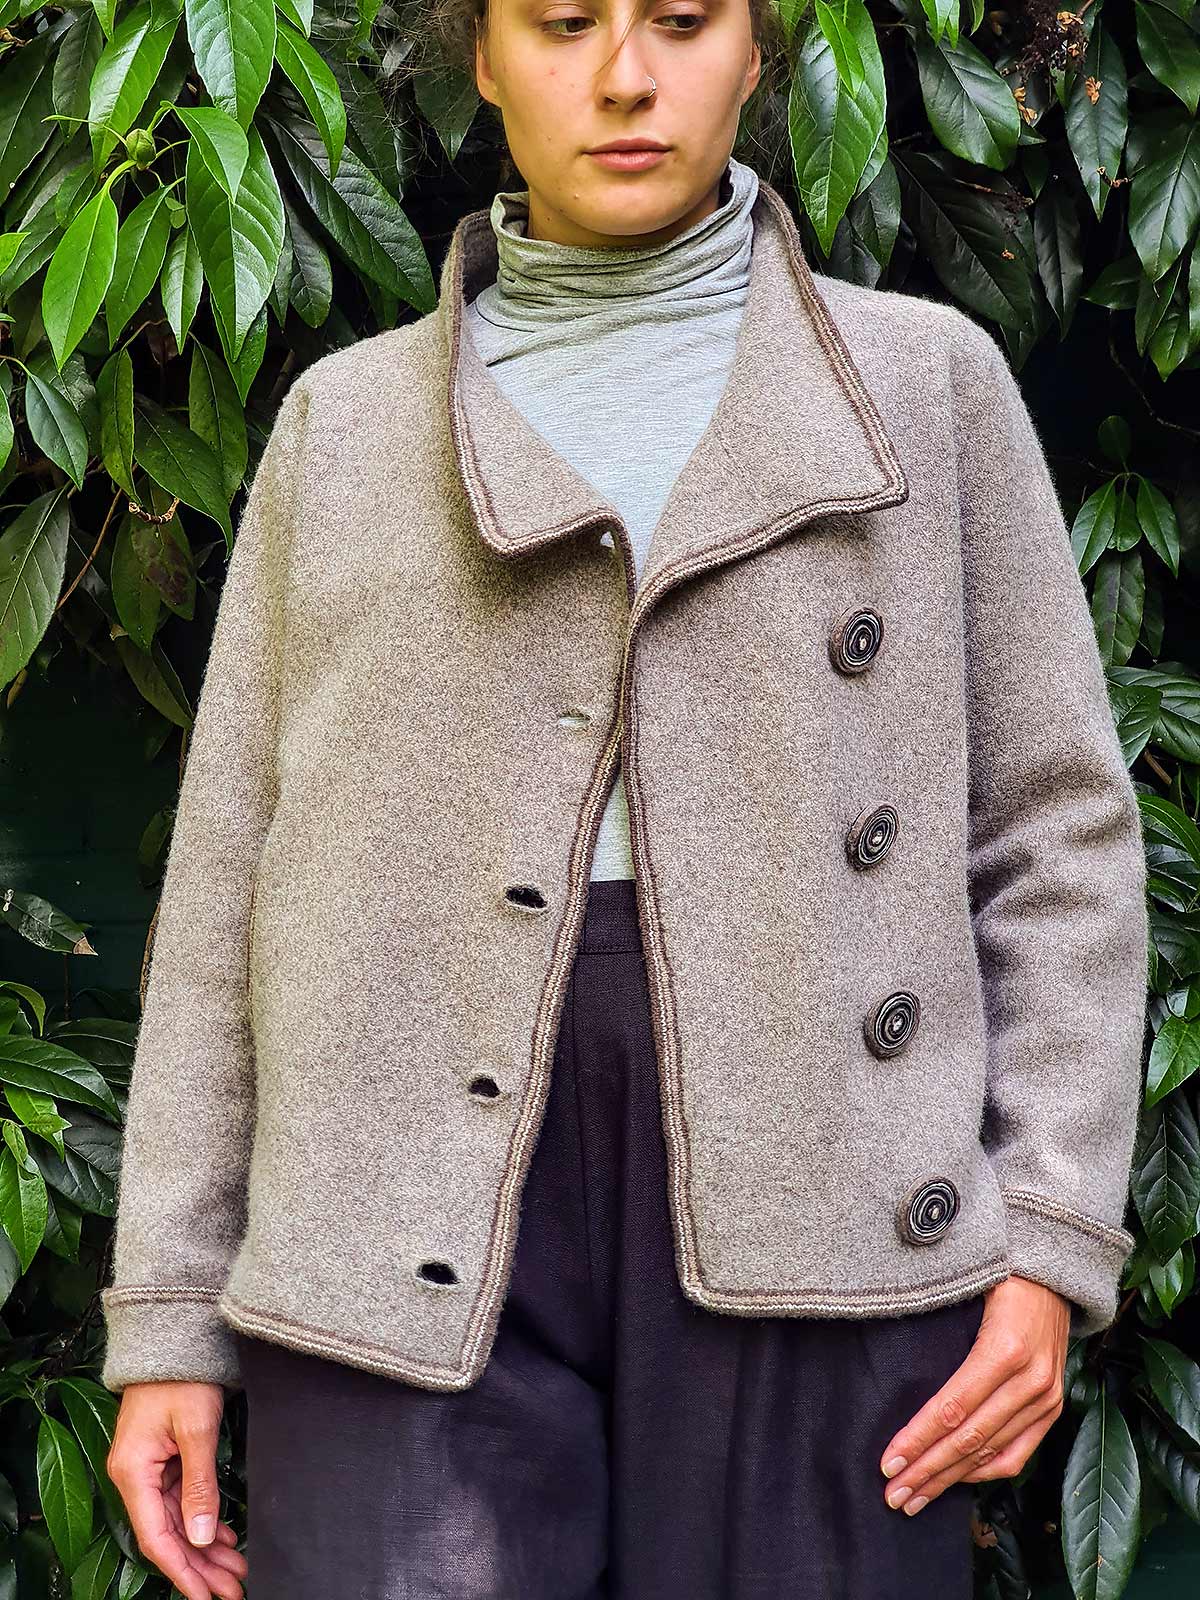 woman wearing jacket in garden